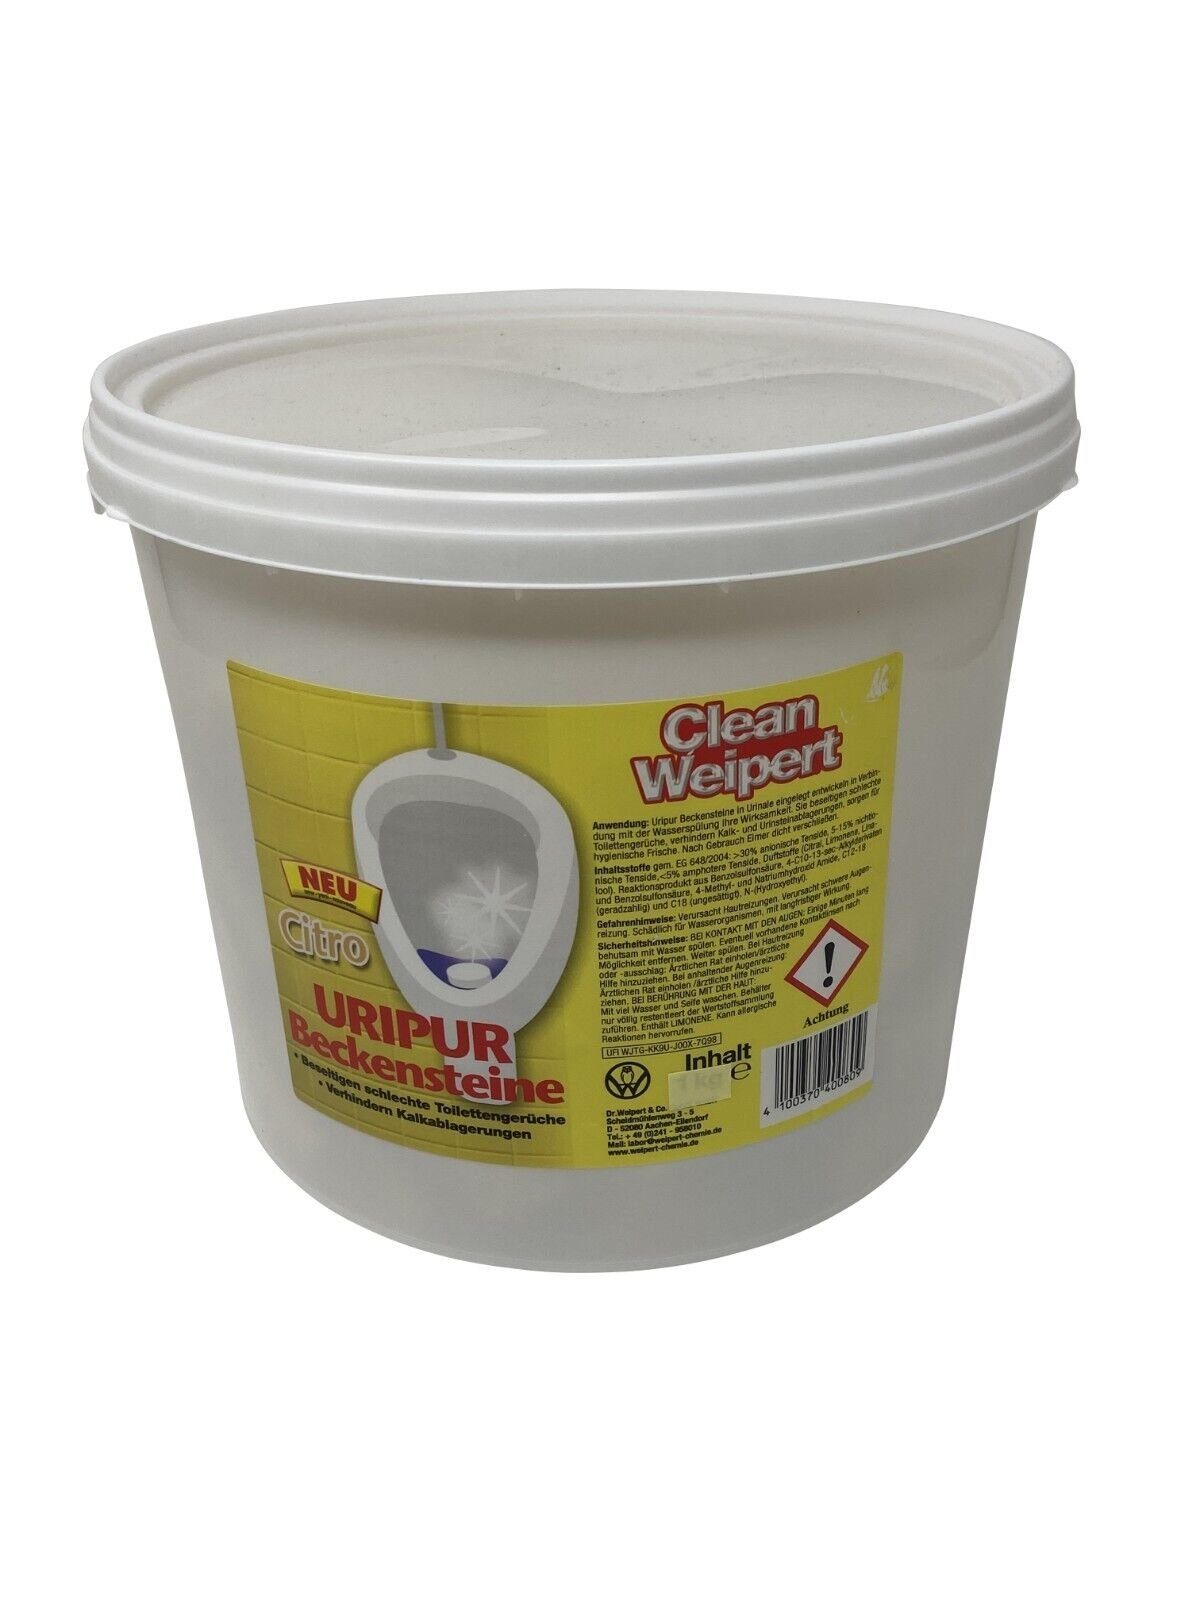 Clean Weipert WC-Duftspüler Beckensteine Urinalsteine 3kg